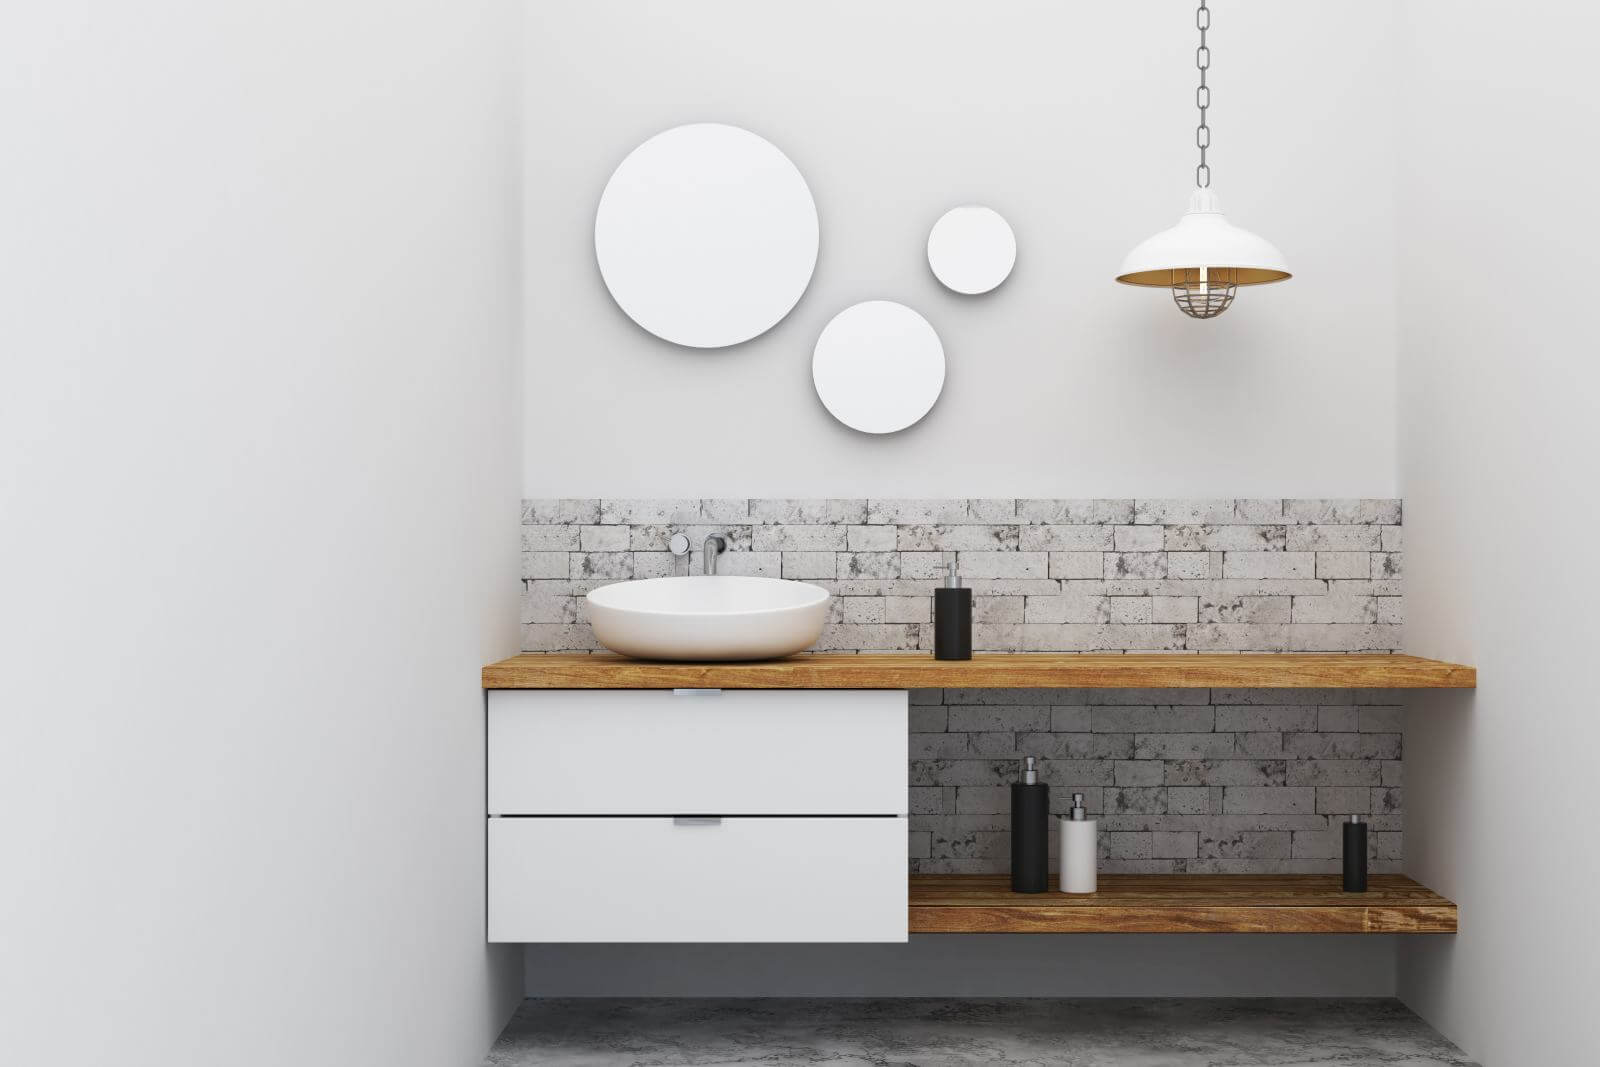 Contemporary bathroom sink interior design. 3D Rendering